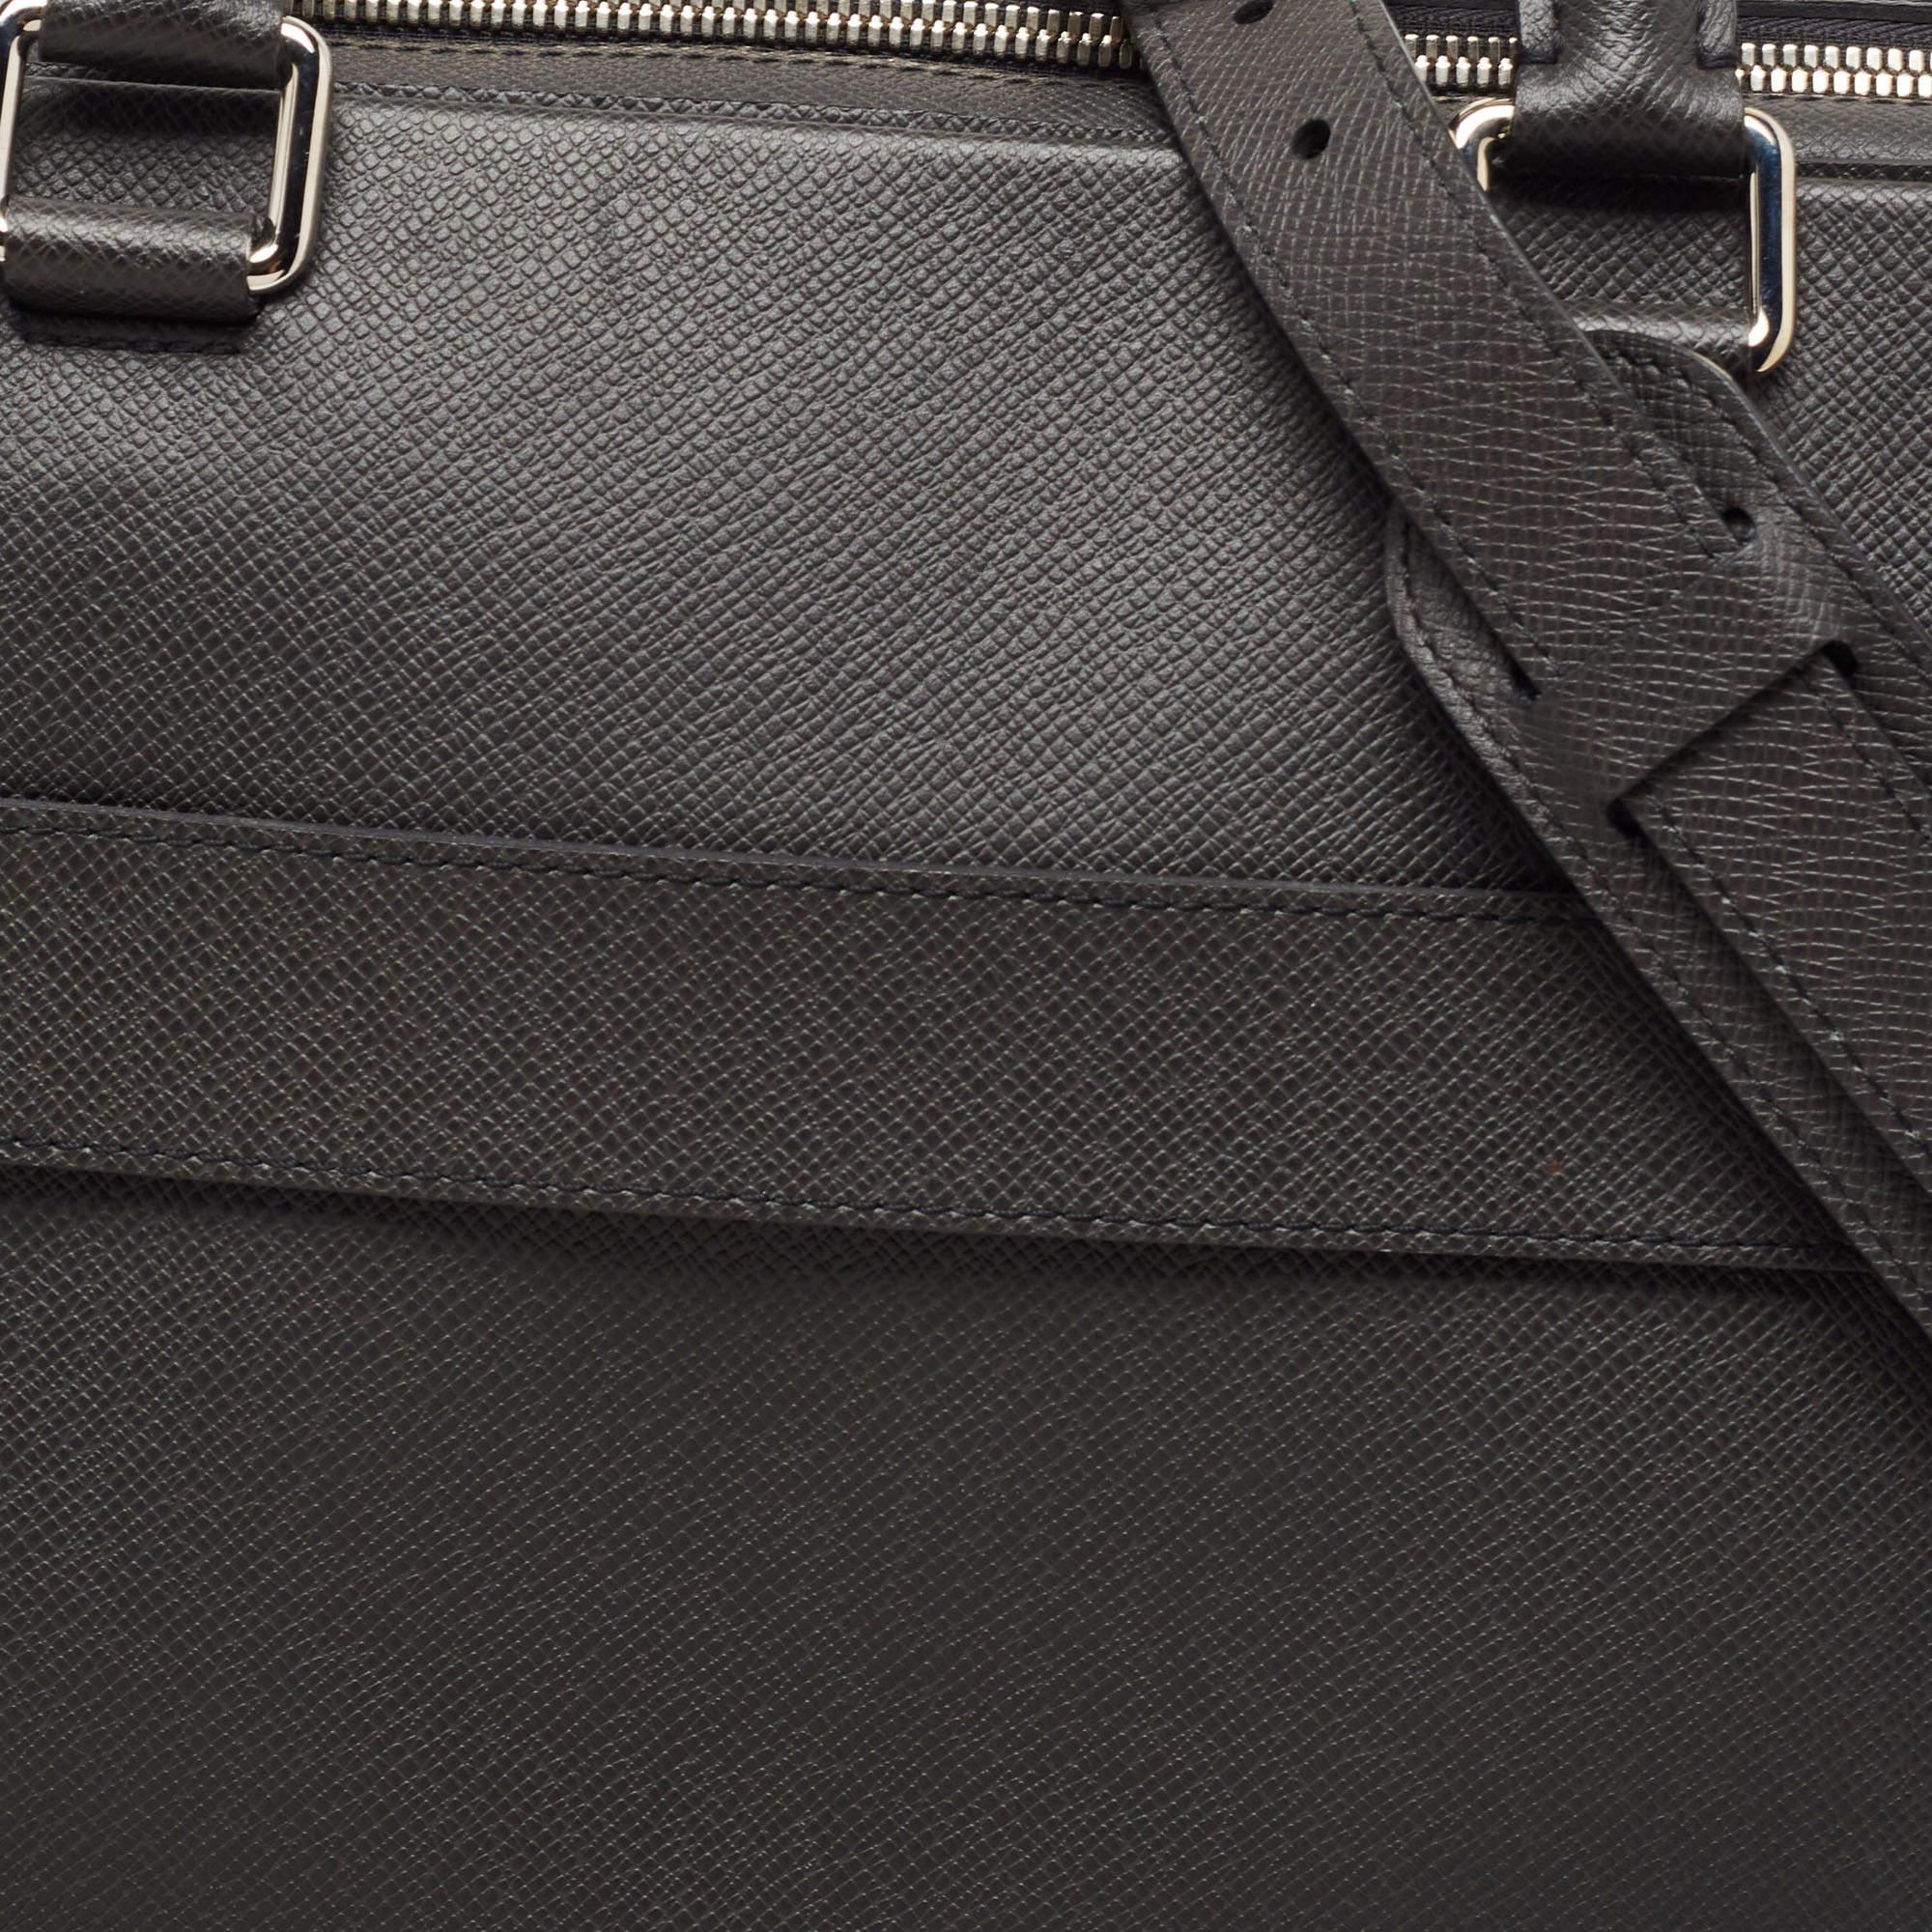 Men's Louis Vuitton Black Taiga Leather Documents Briefcase Bag For Sale